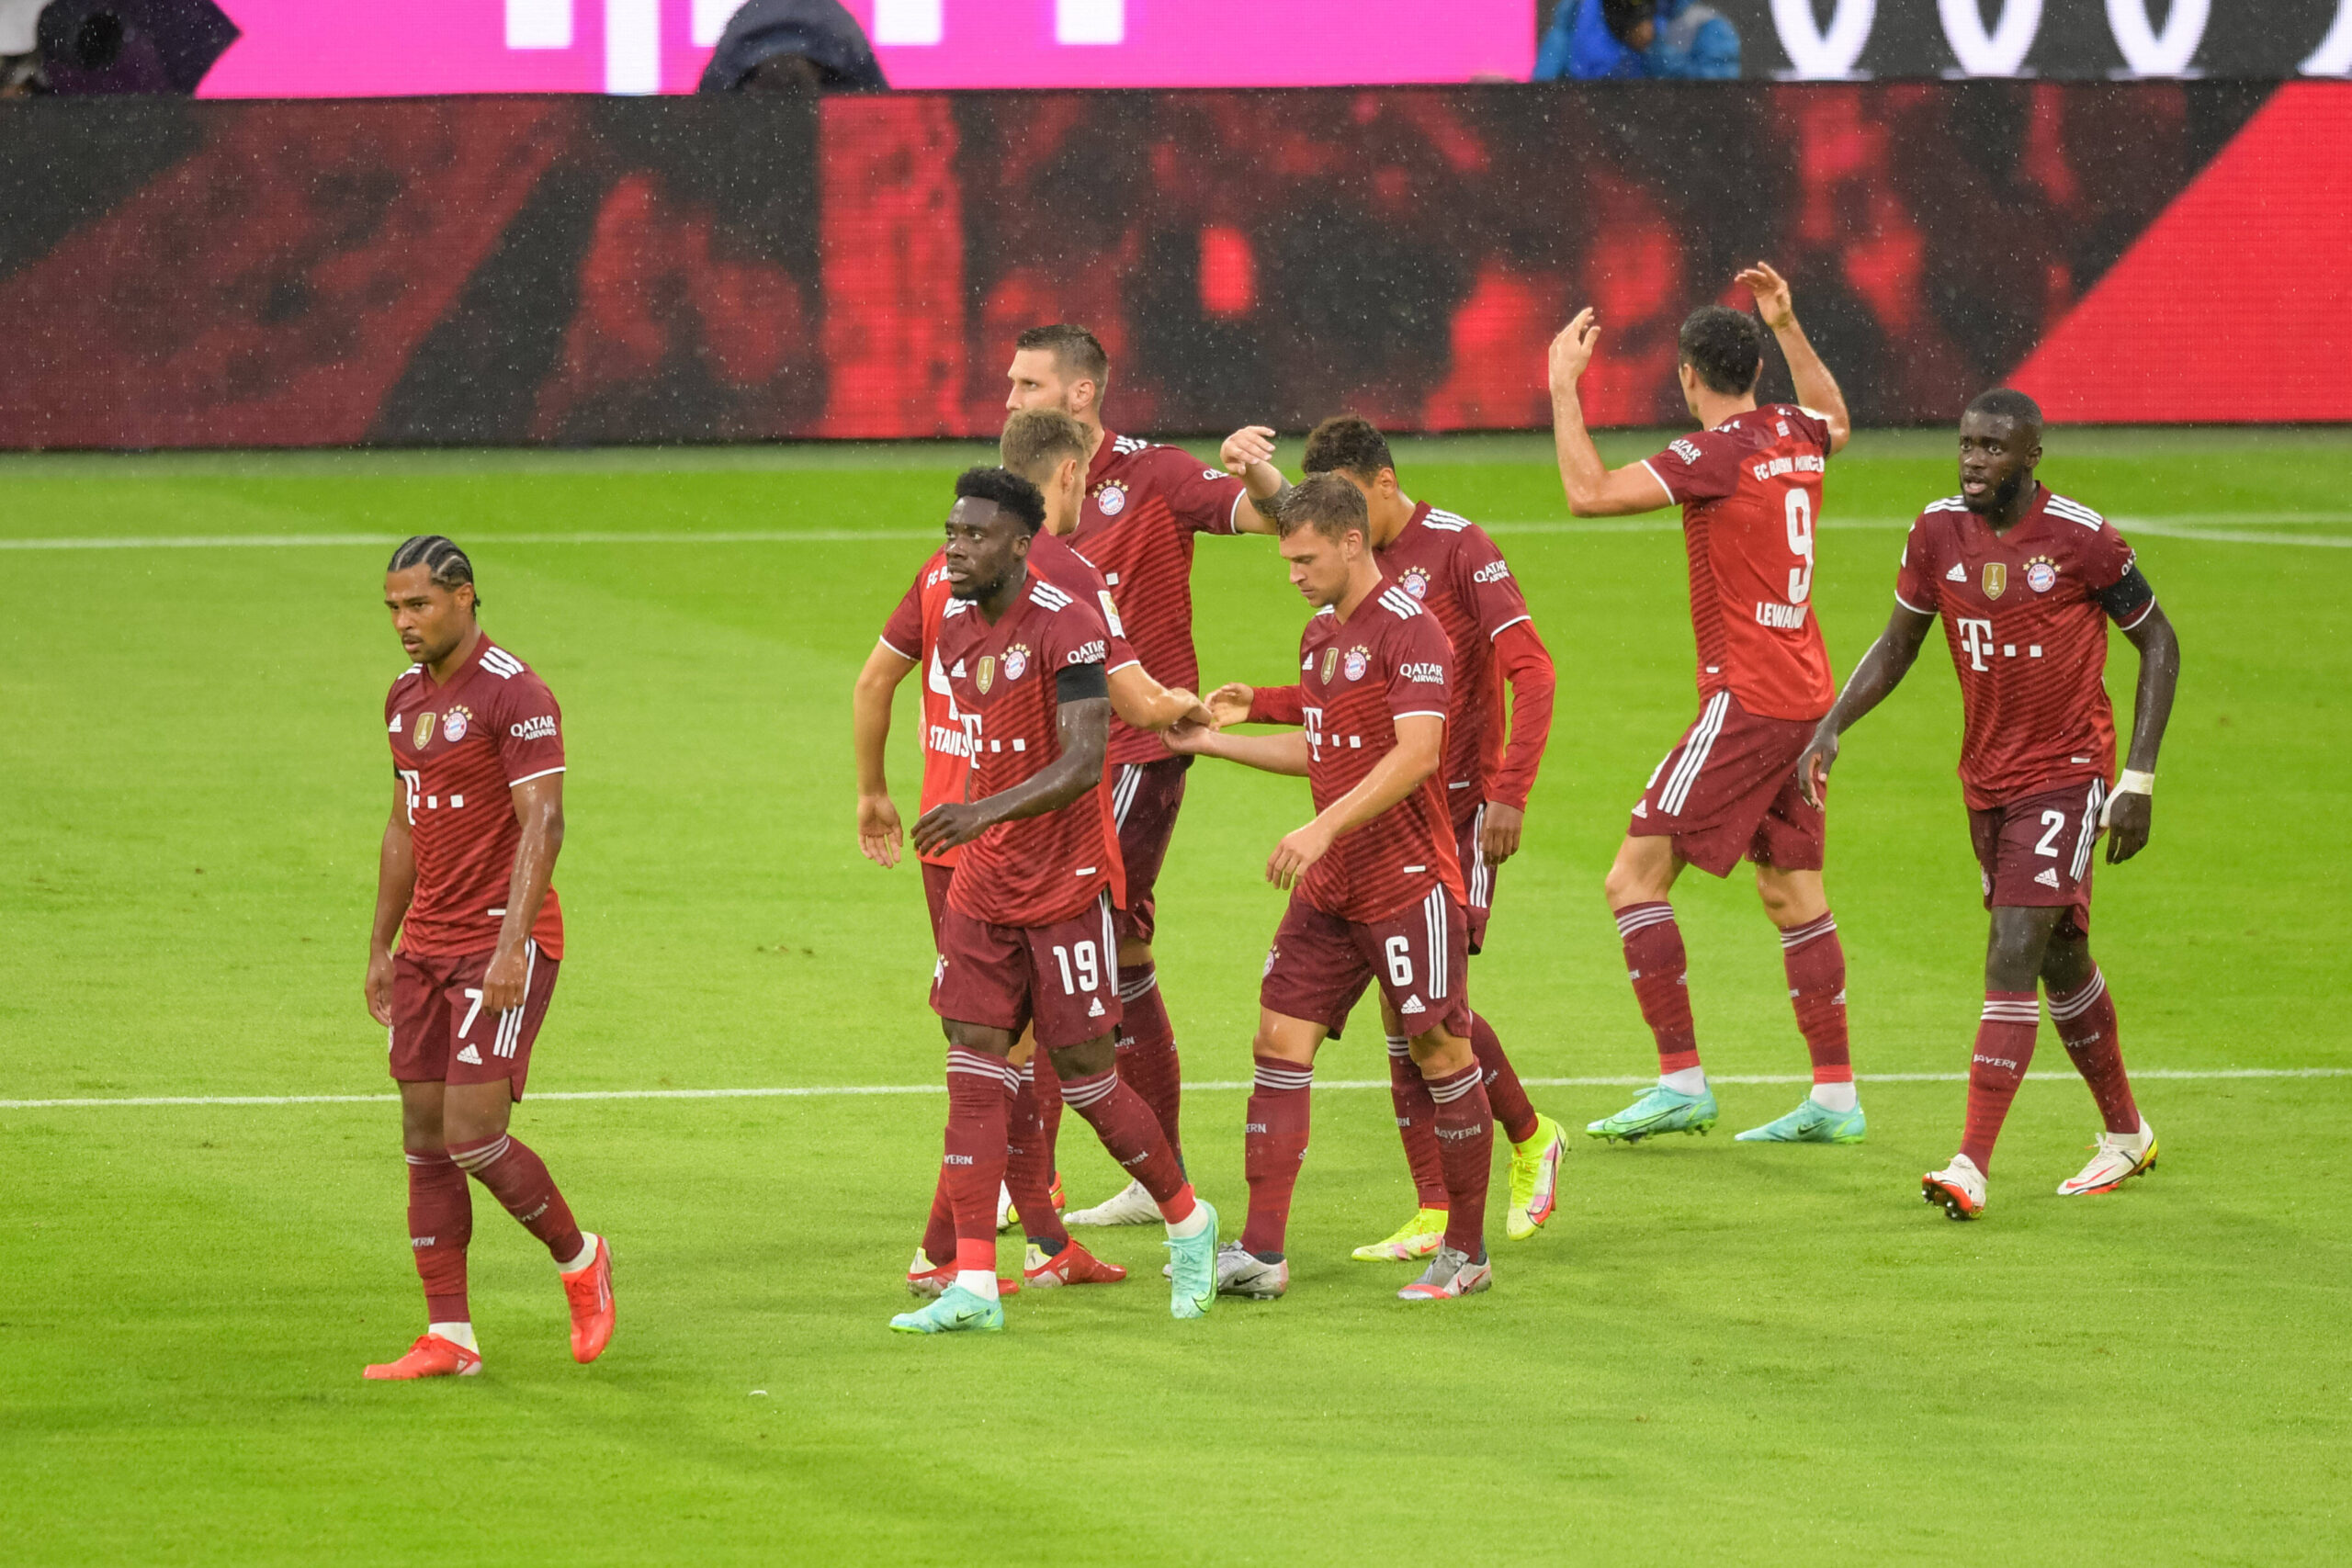 FC Bayern München se reencontró con la victoria ante Köln después de un fallido debut frente a Borussia Mönchengladbach. Foto: Imago.